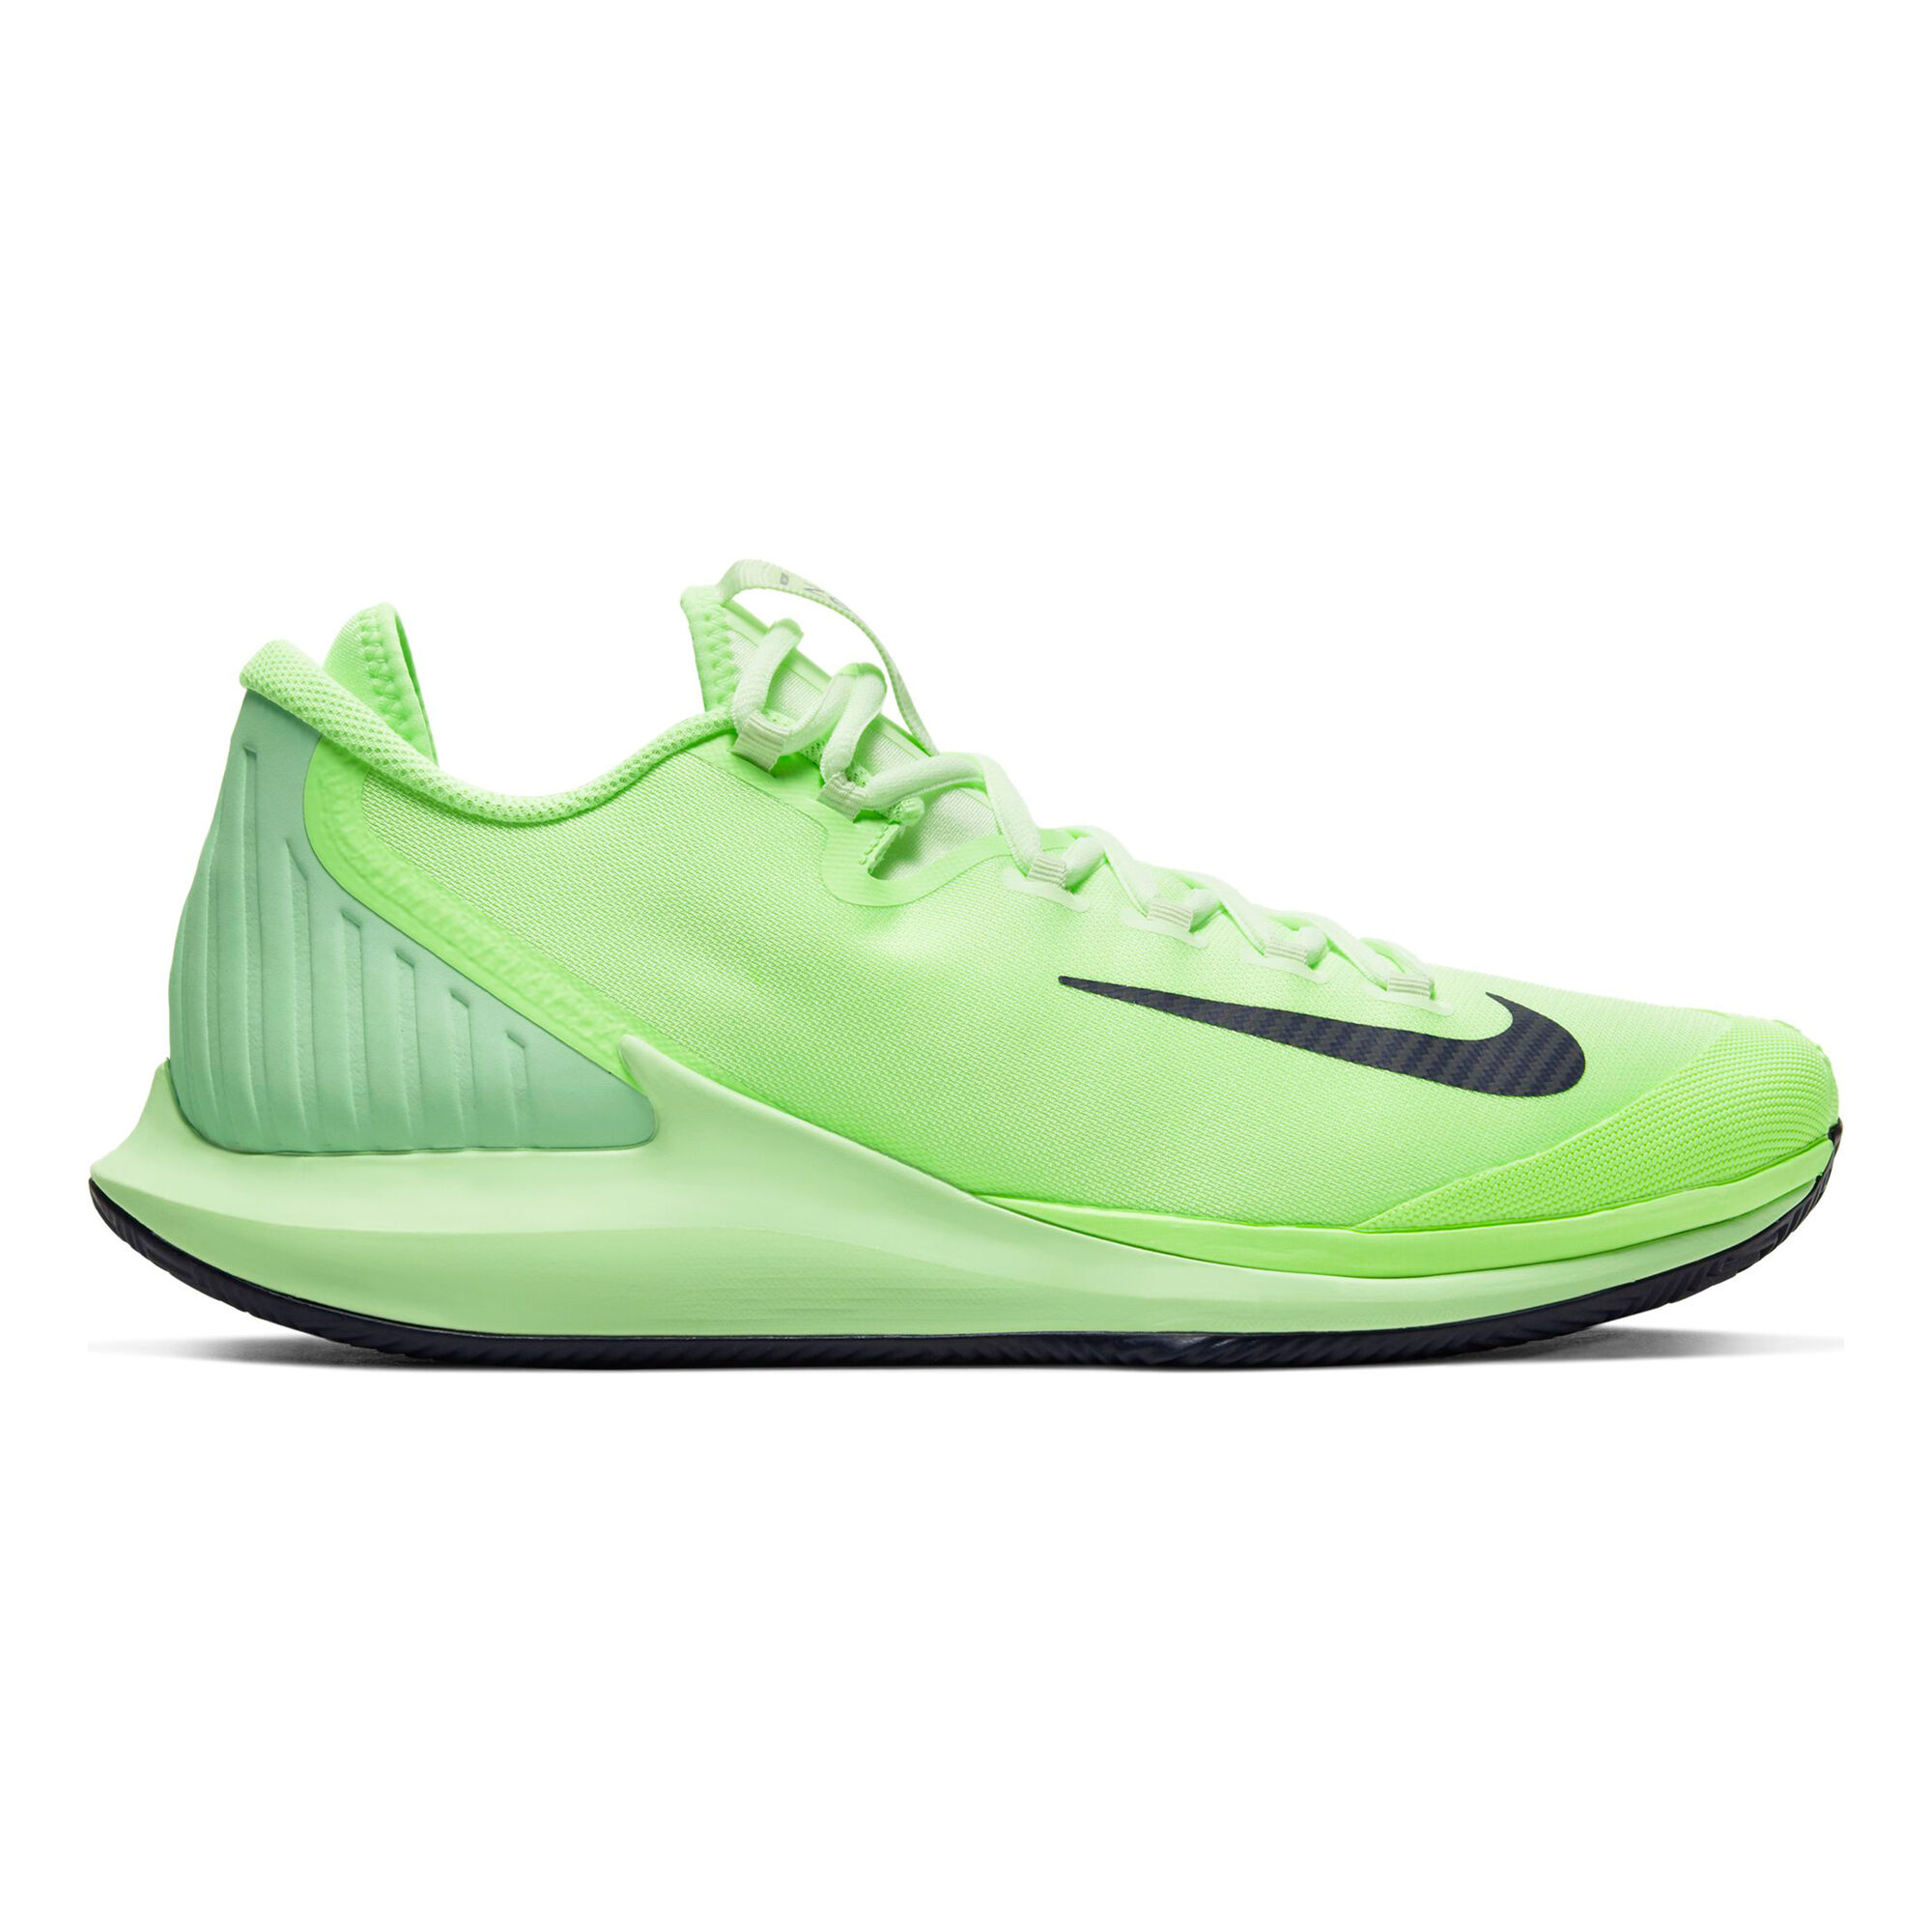 Buy Nike Air Zoom Zero Clay Court Shoe Men Neon Green, Light Green ...